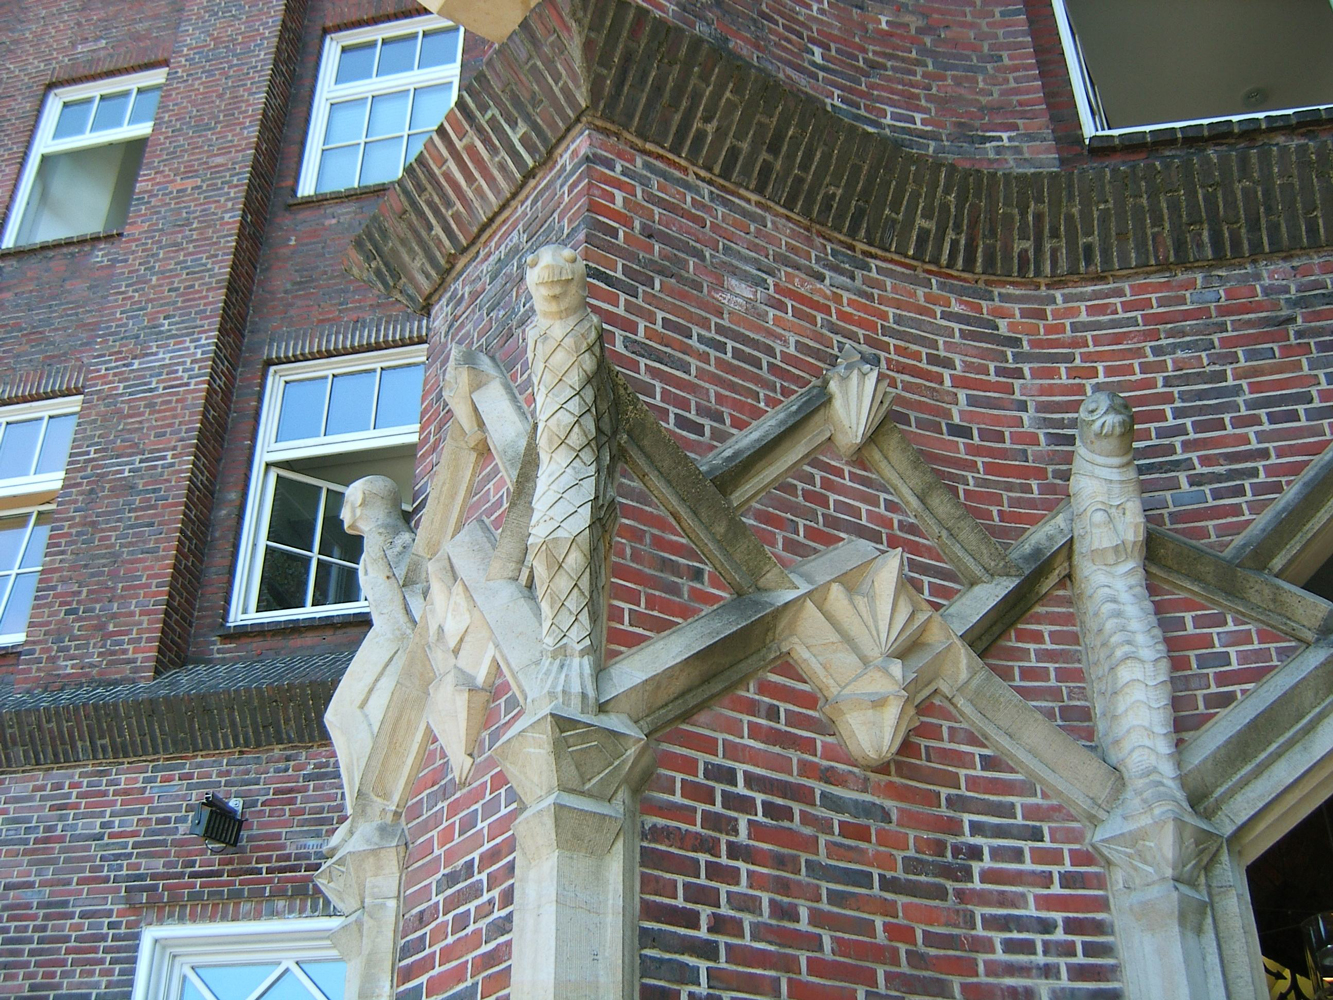 Ballinhaus facade with Sculptures